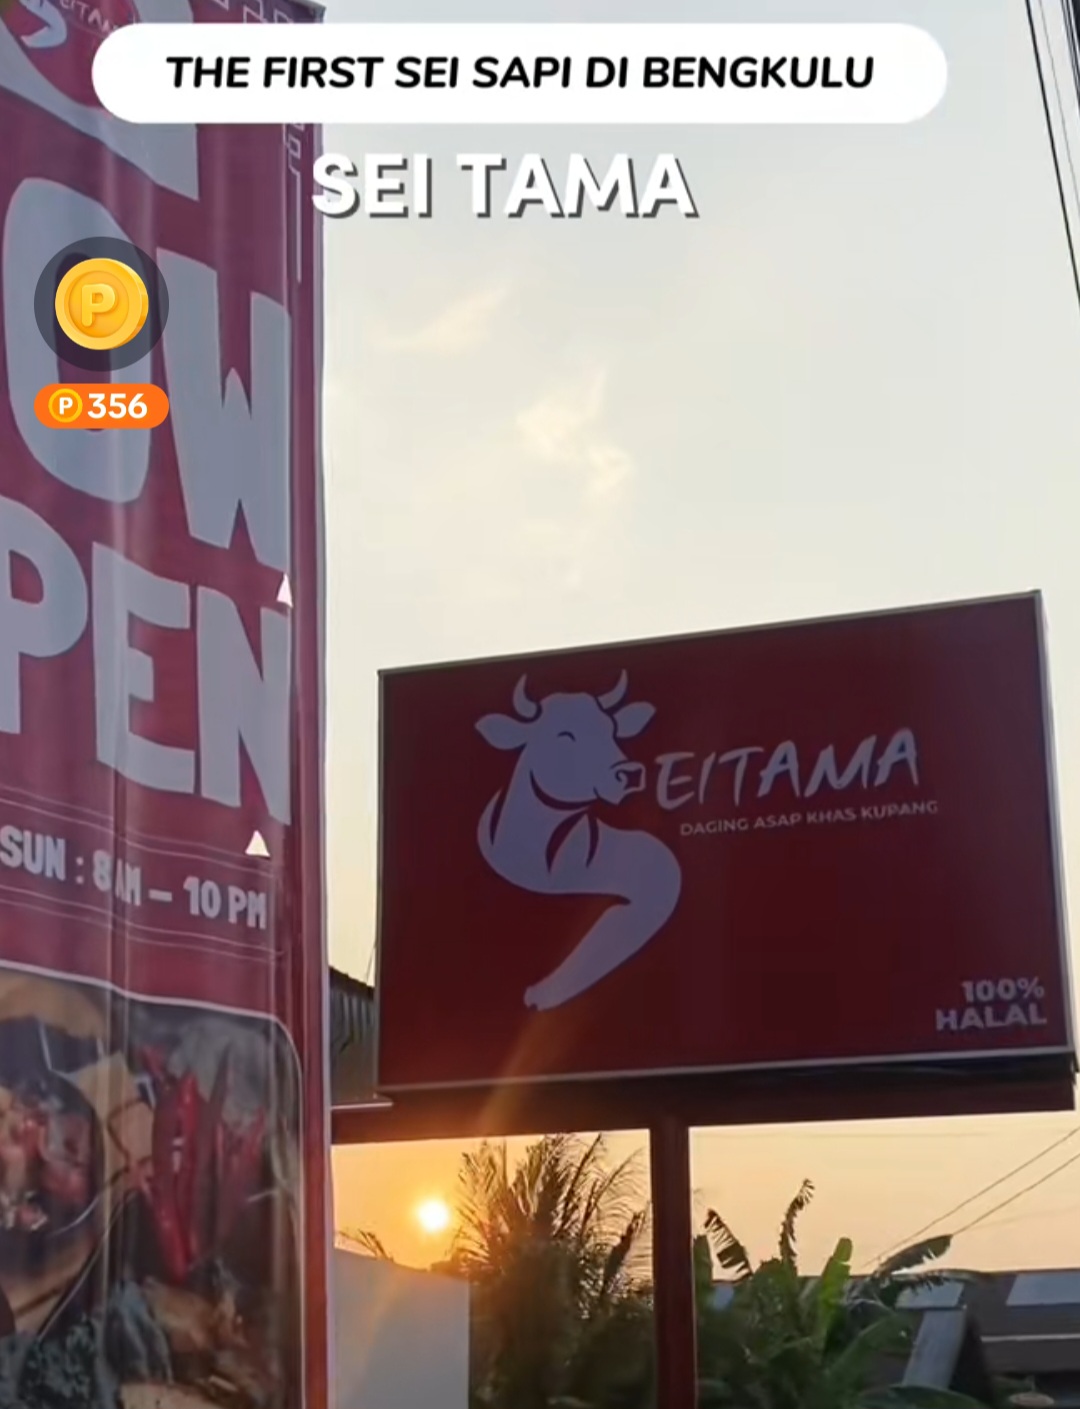 Seitama Hadir di Bengkulu, Sajikan Menu Sei Sapi Khas Nusa Tenggara Timur yang Lezat, Lokasinya di Sini